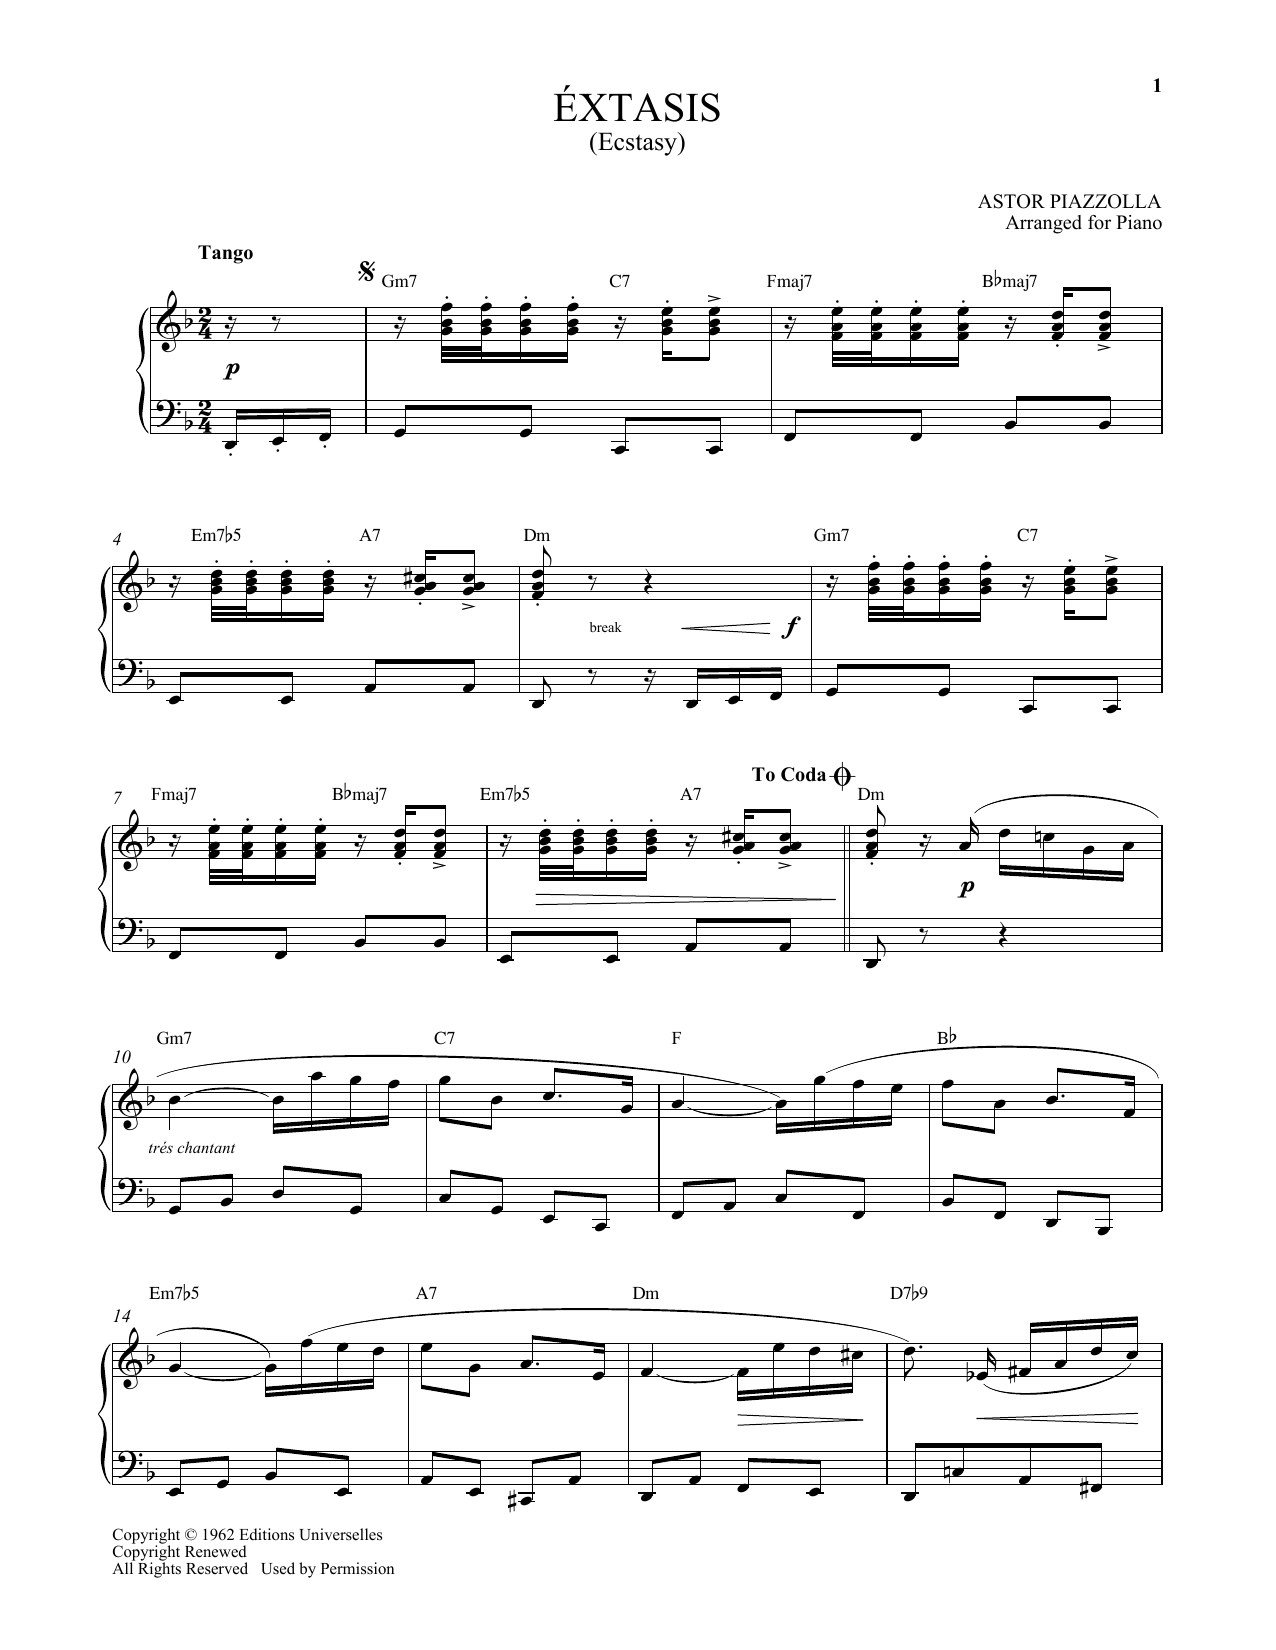 Download Astor Piazzolla Extasis Sheet Music